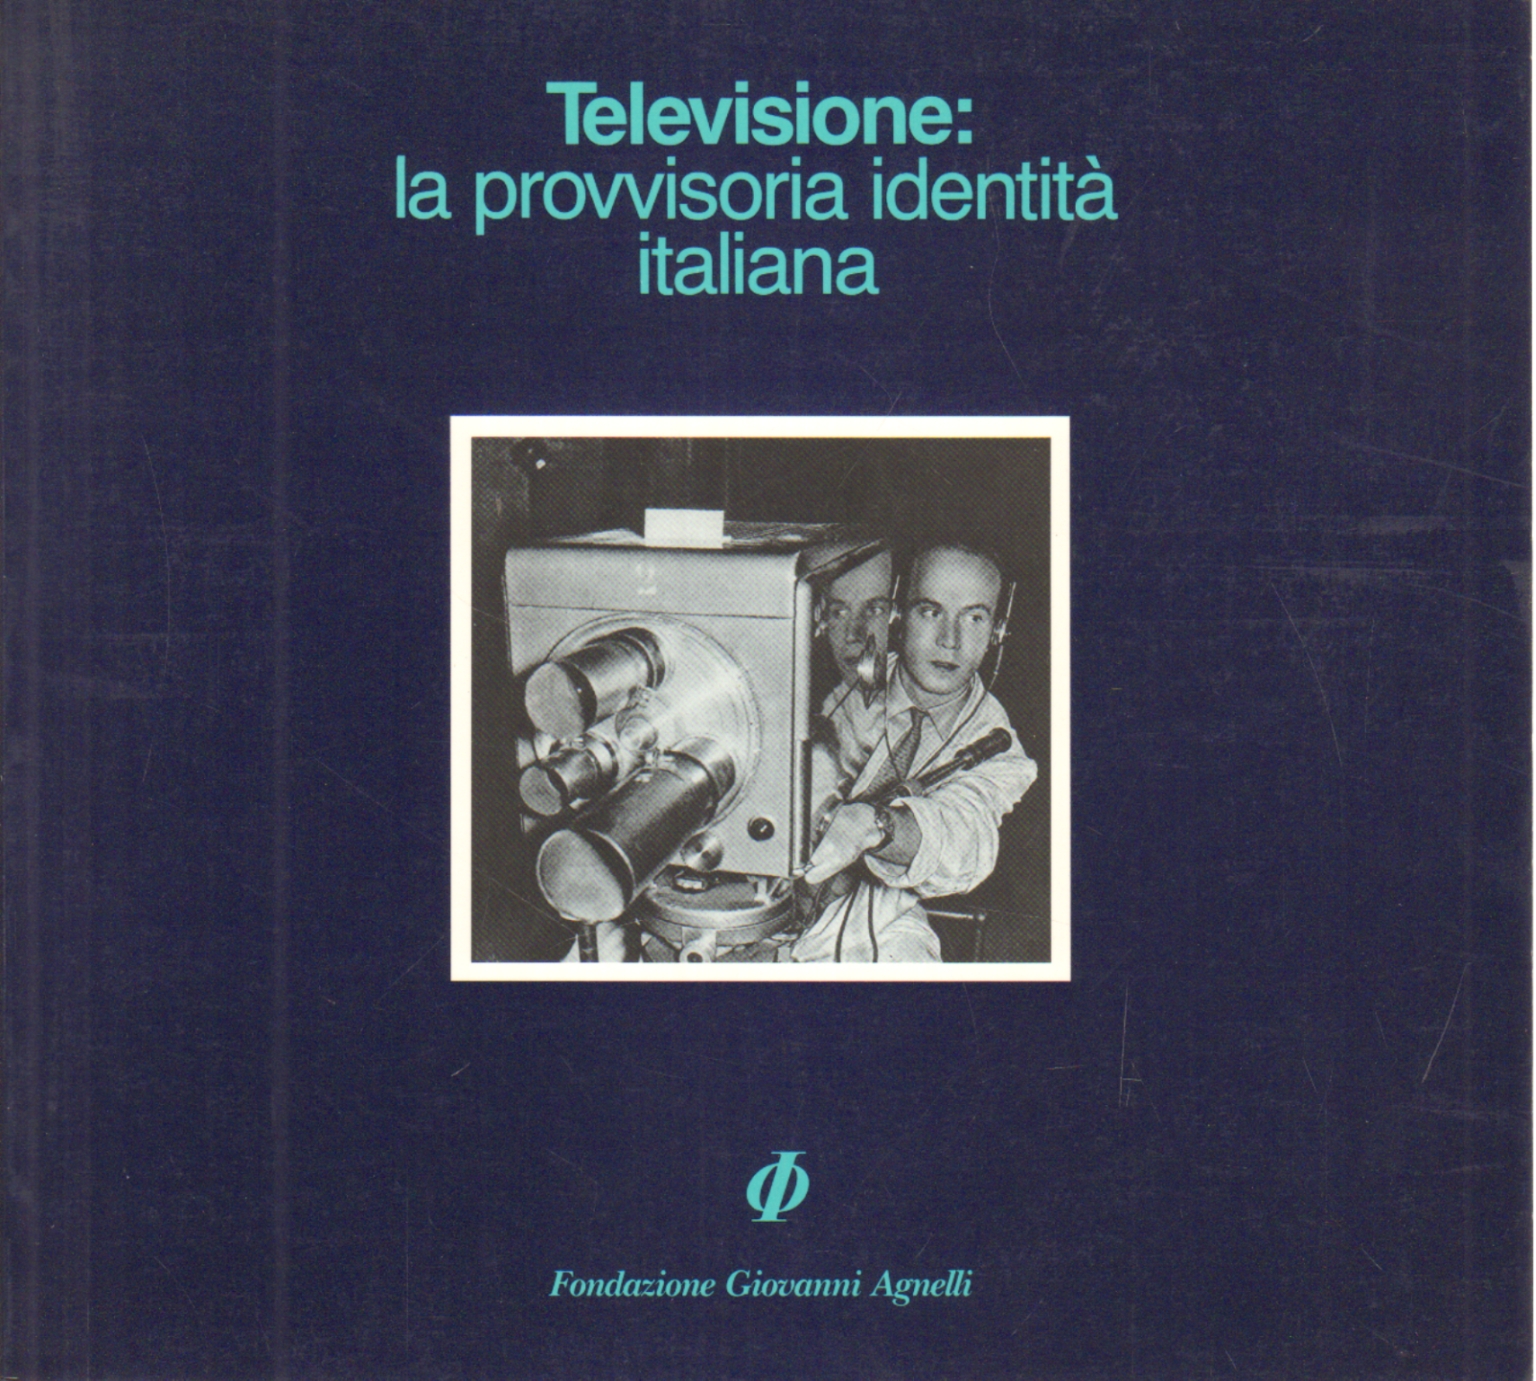 Televisión: la identidad italiana provisional, AA.VV.